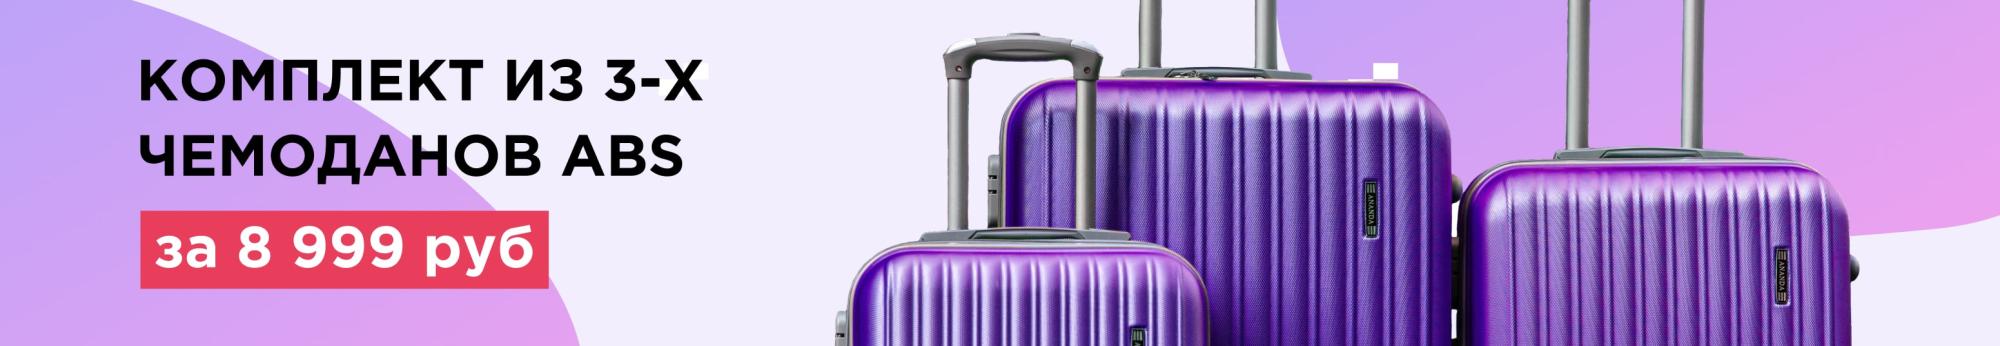 Комплект из 3-х чемоданов ABS за 8 999 рублей – экономьте на путешествиях вместе с нами!